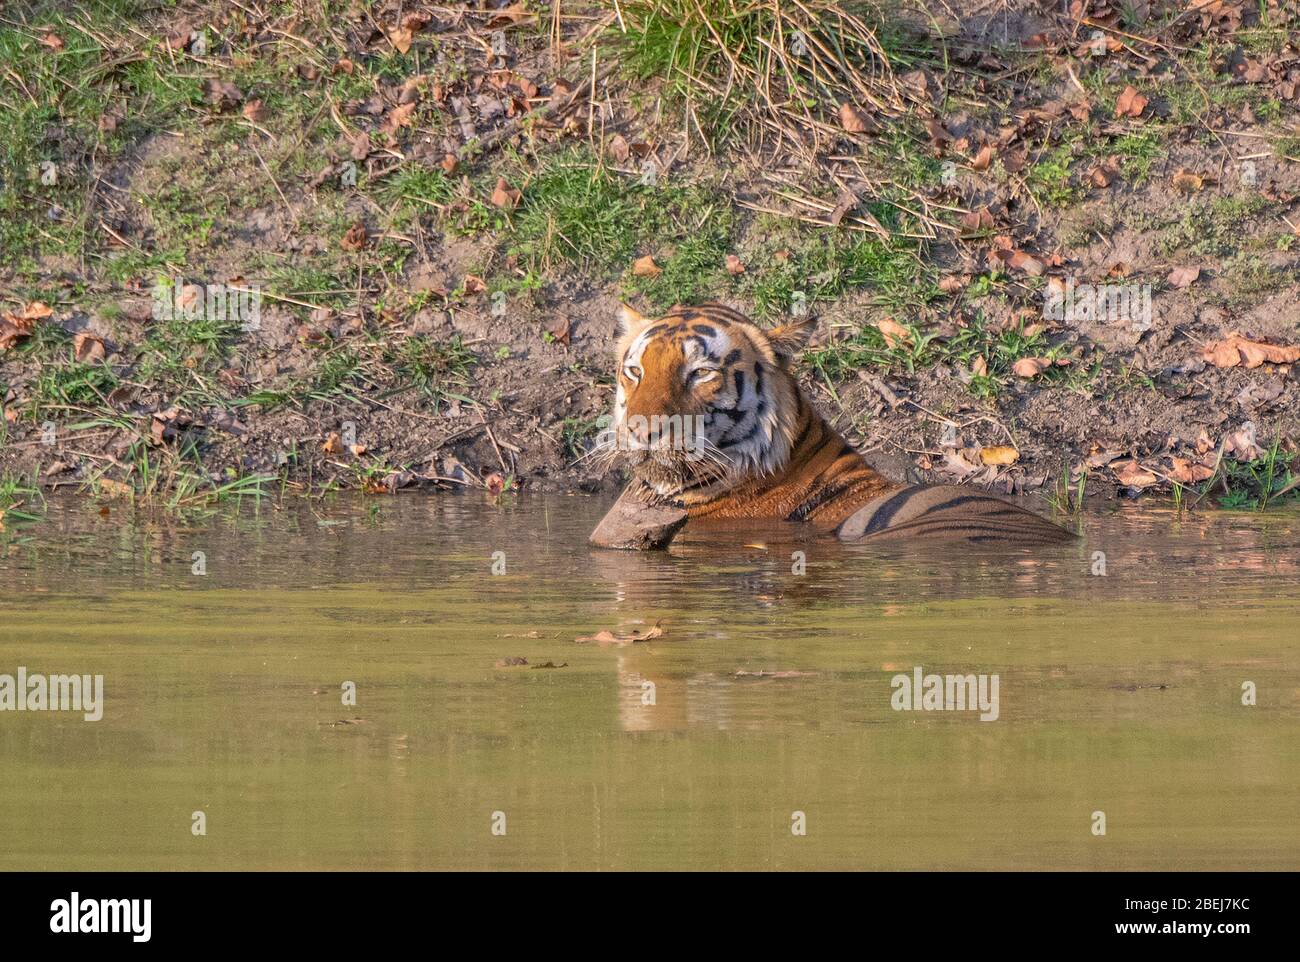 Chhota Munna Tiger resting in water at Kanha National Park, Madhya Pradesh, India Stock Photo